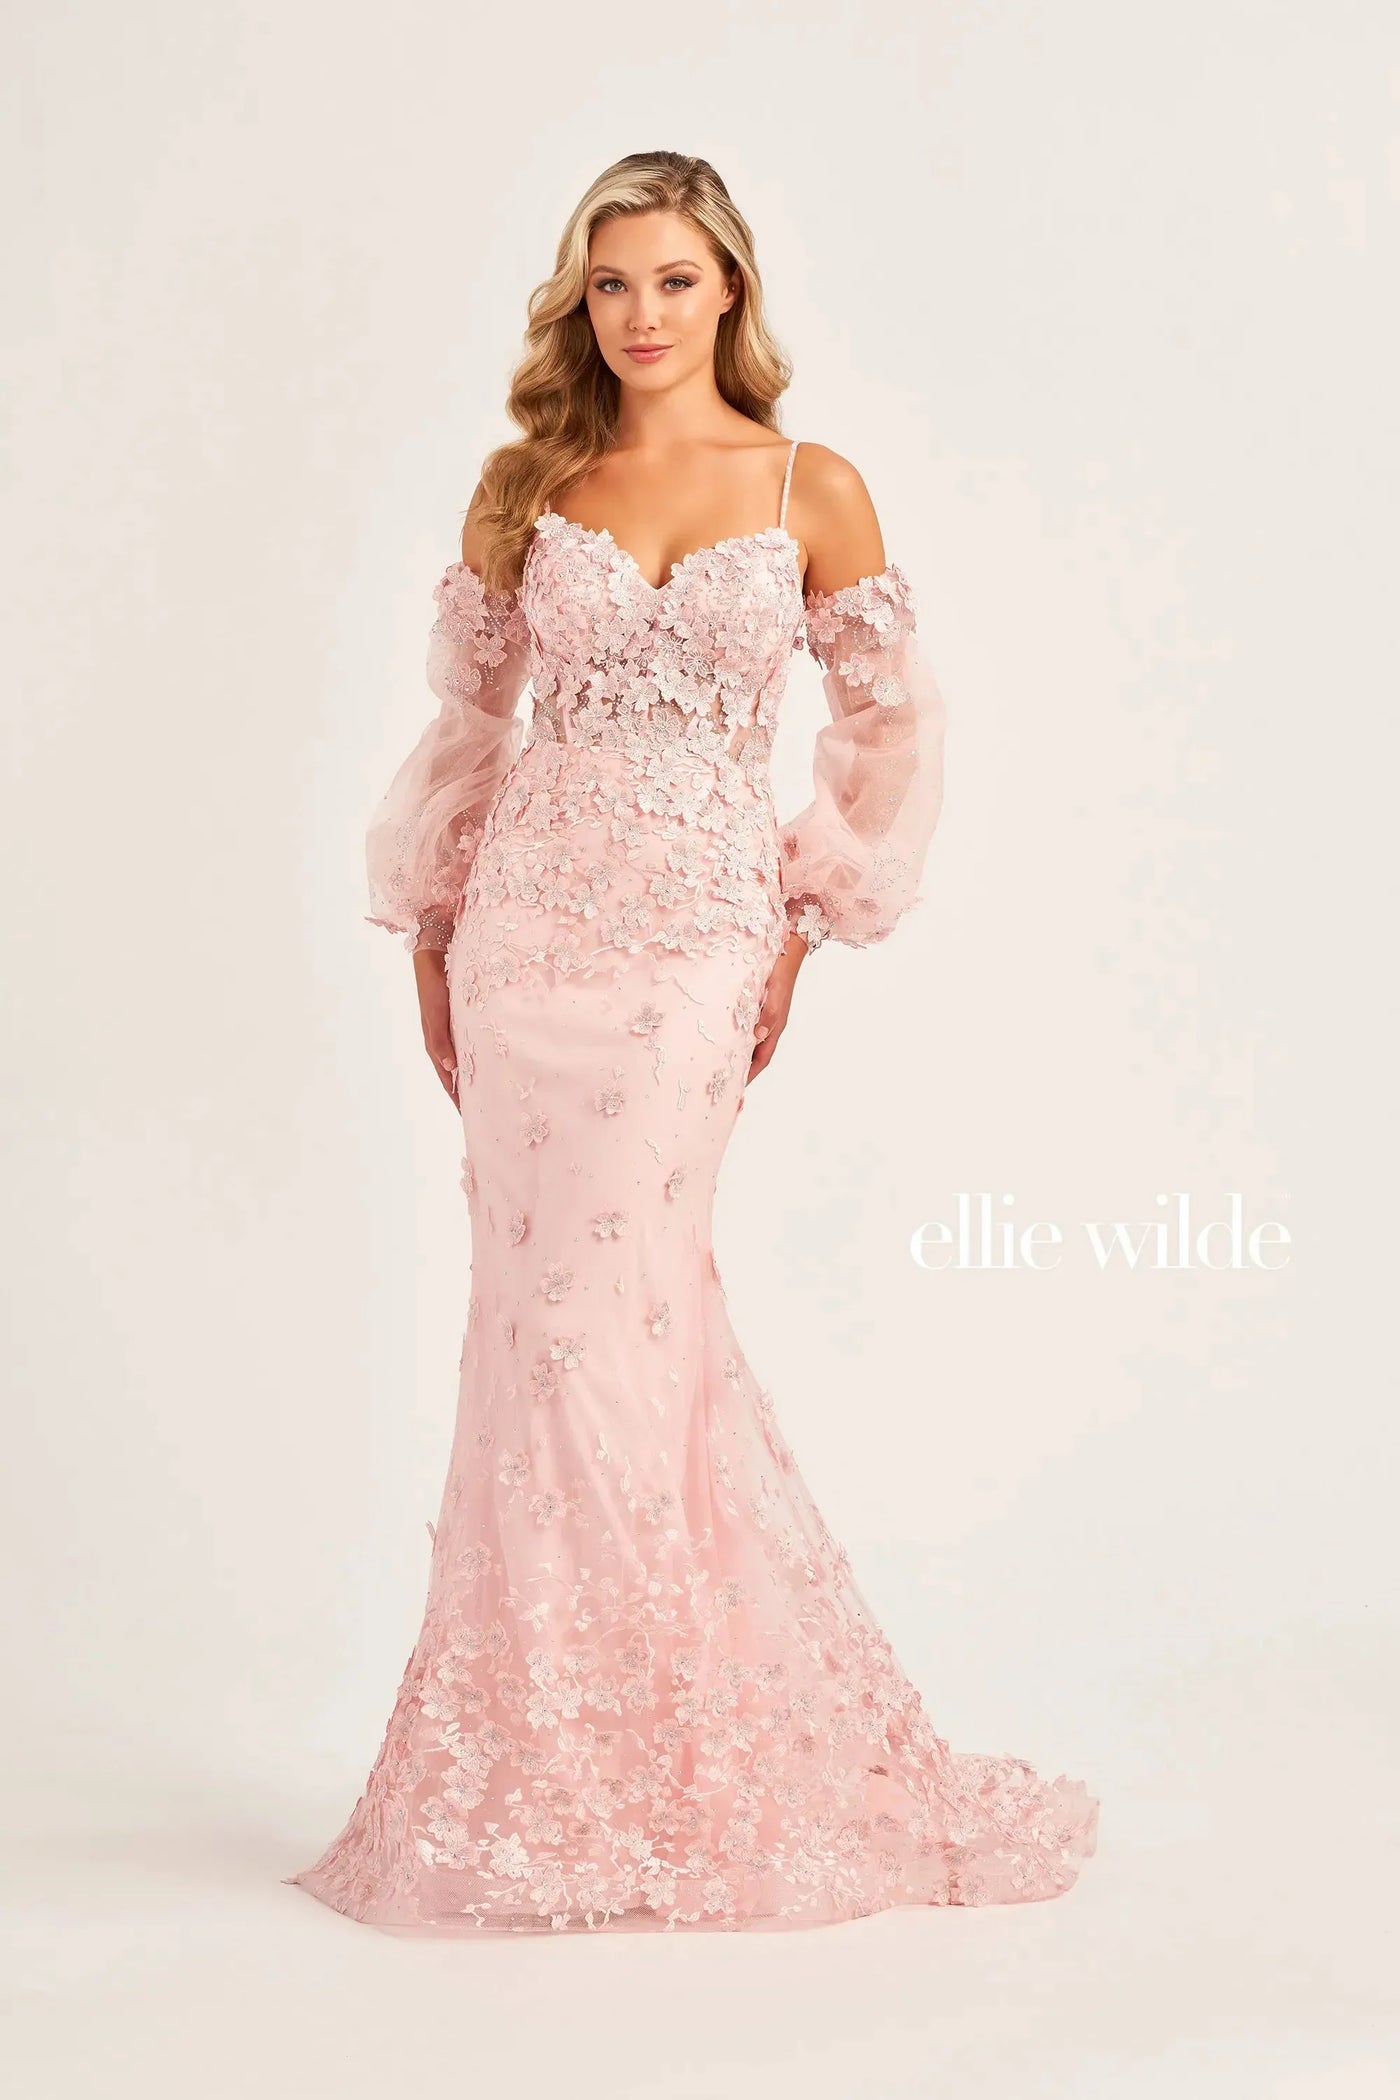 Ellie Wilde EW35107 - Sleeveless Sweetheart Gown